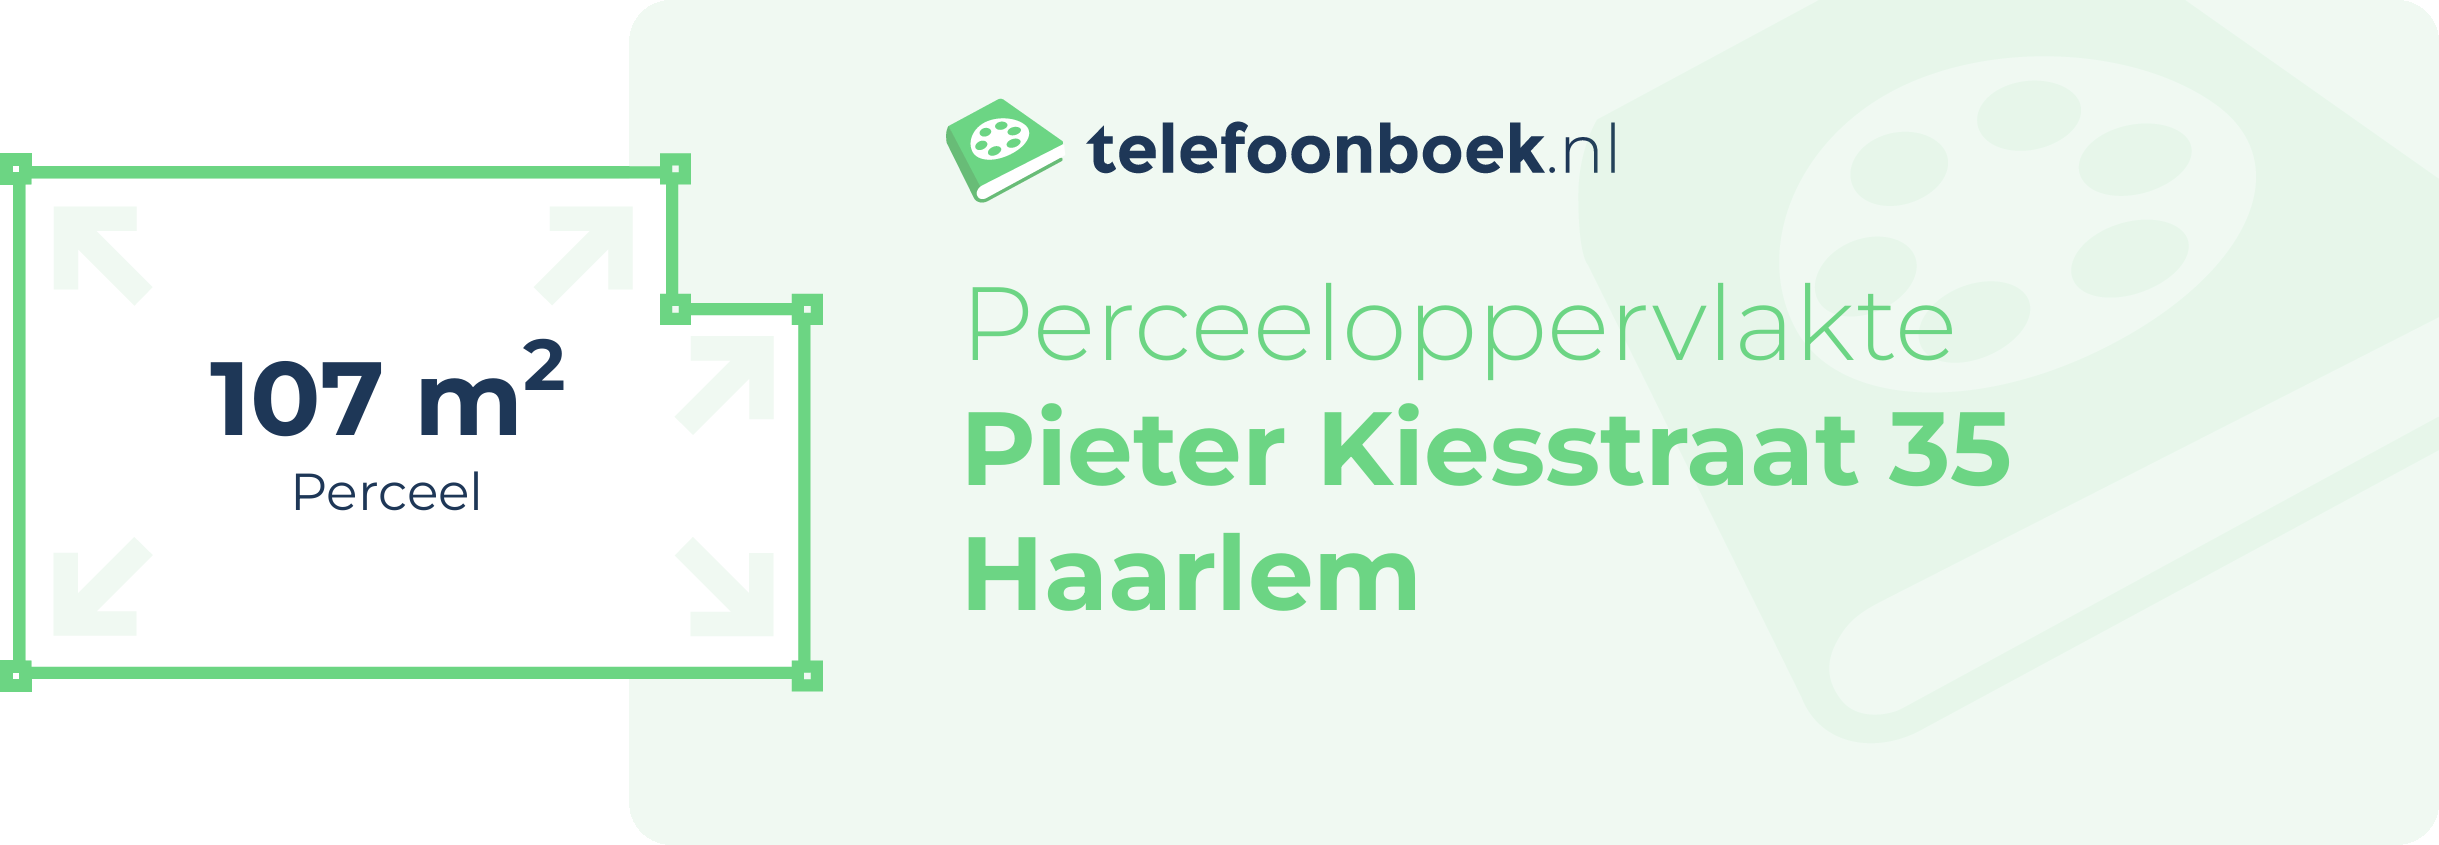 Perceeloppervlakte Pieter Kiesstraat 35 Haarlem